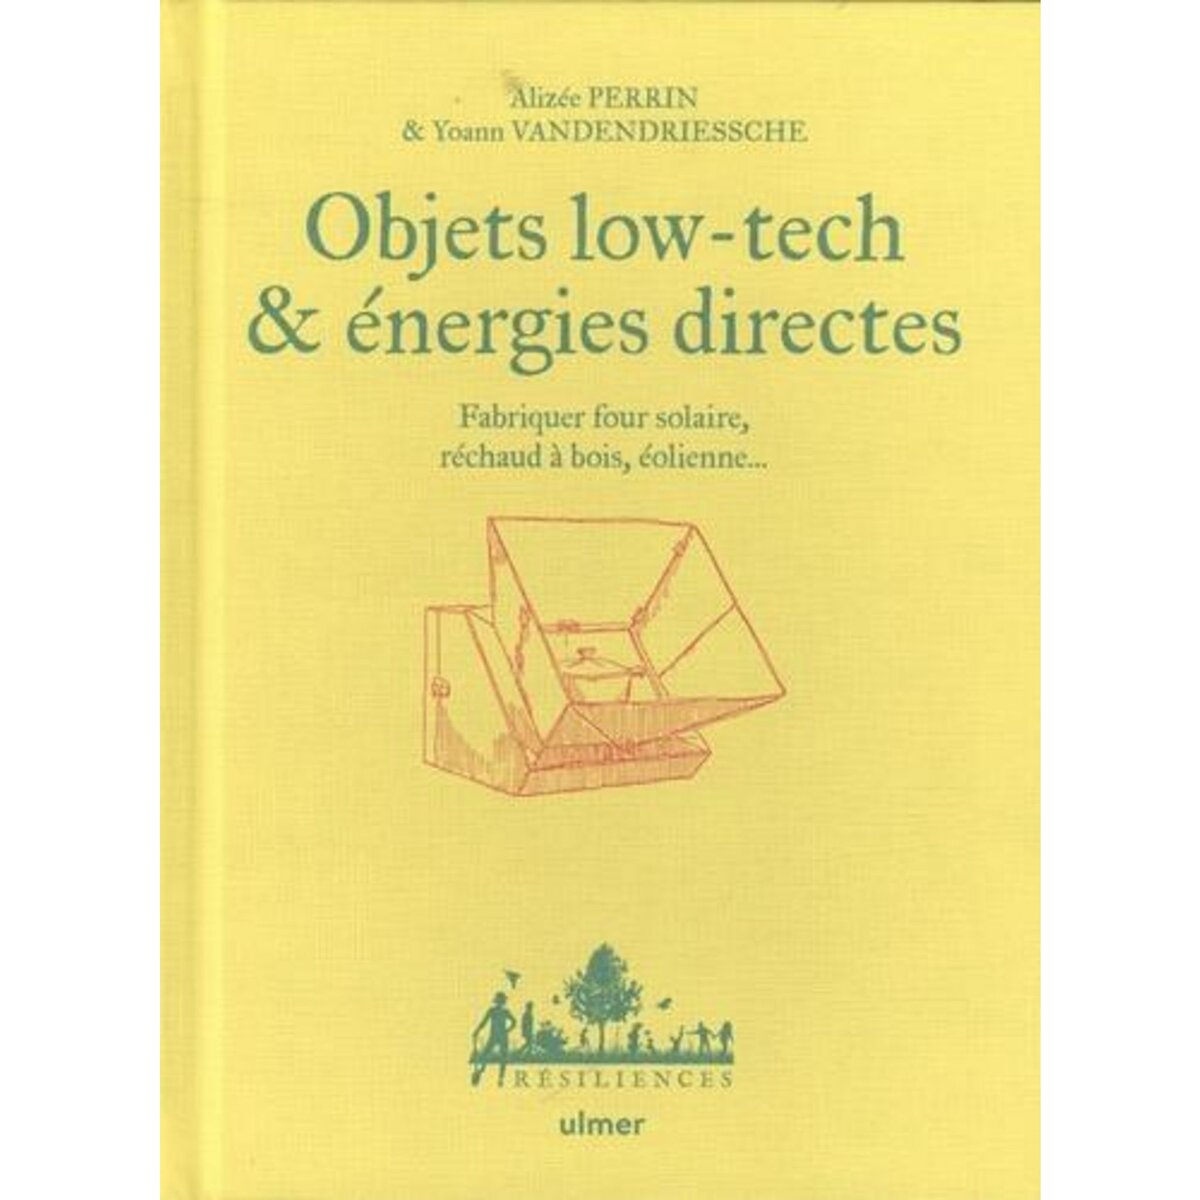  OBJETS LOW-TECH & ENERGIES DIRECTES. FABRIQUER FOUR SOLAIRE, RECHAUD A BOIS, EOLIENNE..., Perrin Alizée